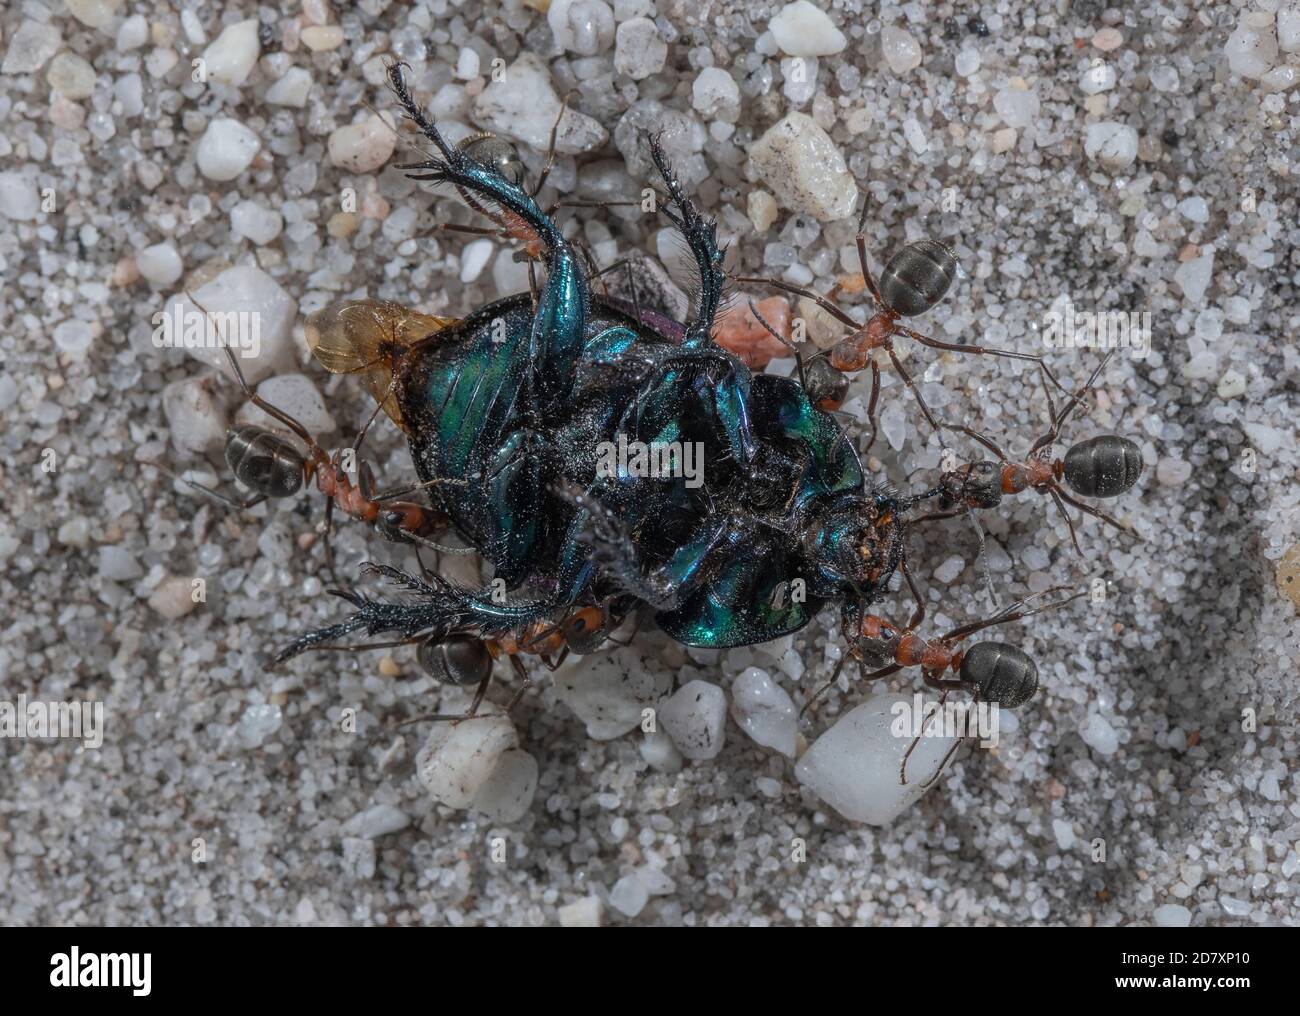 Ants de bois du sud, Formica rufa, transportant le Dor Beetle mort vers le nid. Dorset. Banque D'Images